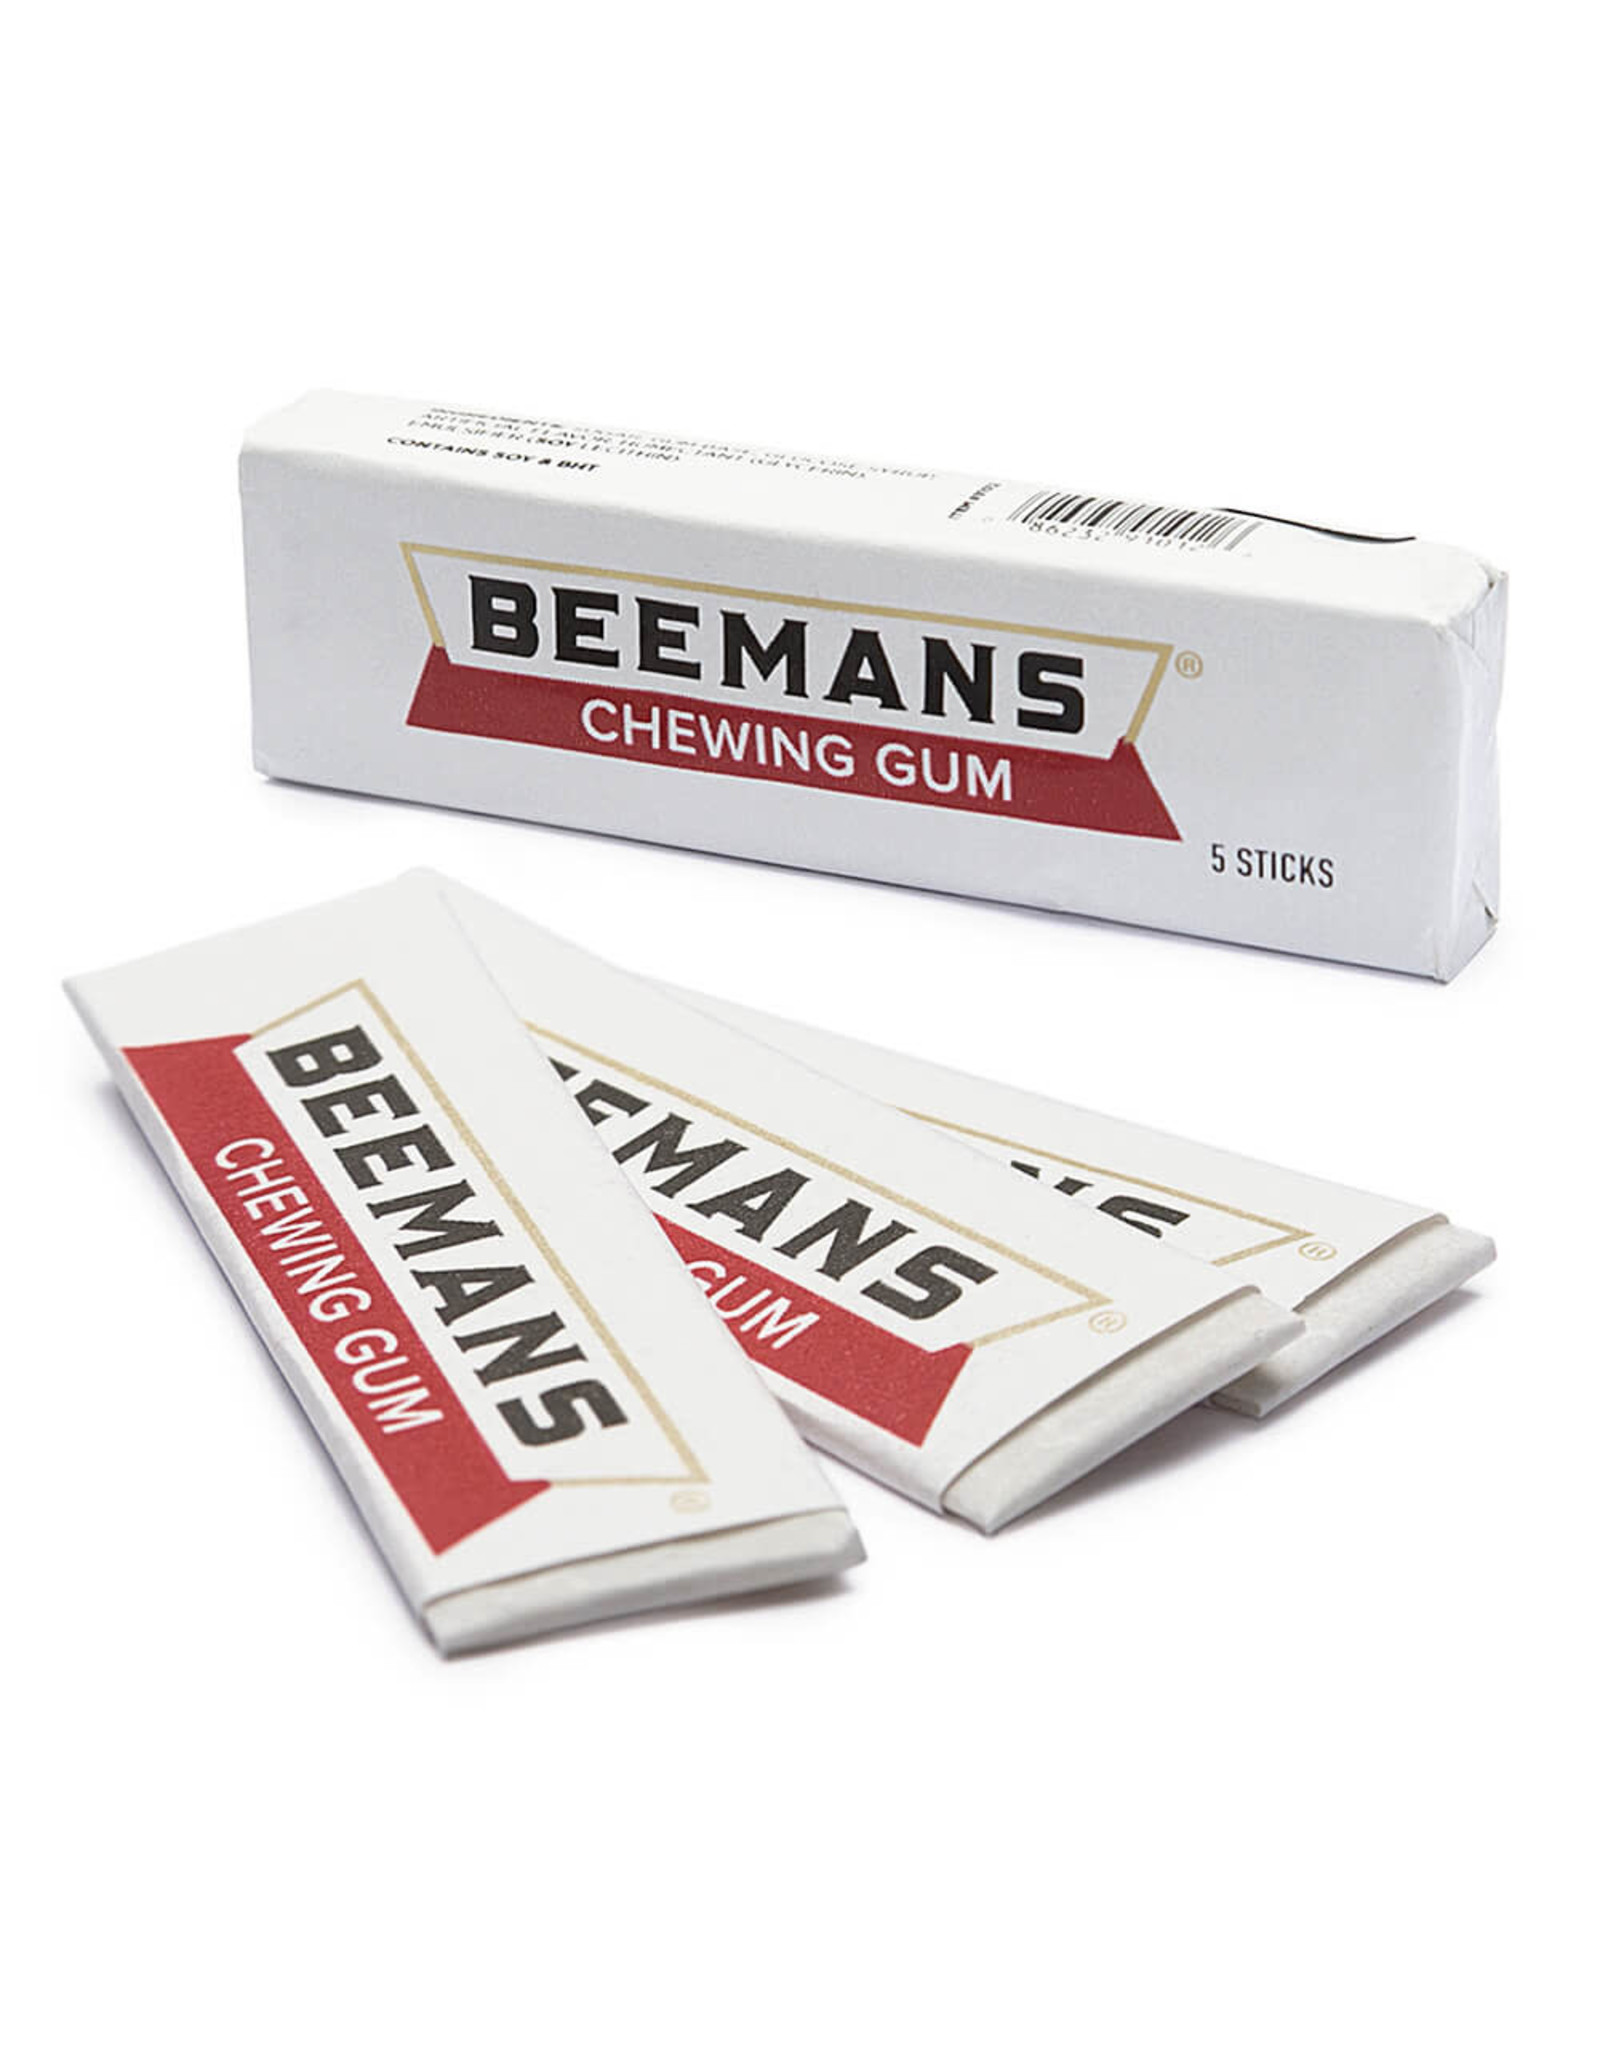 Beemans Gum Five Stick Pack